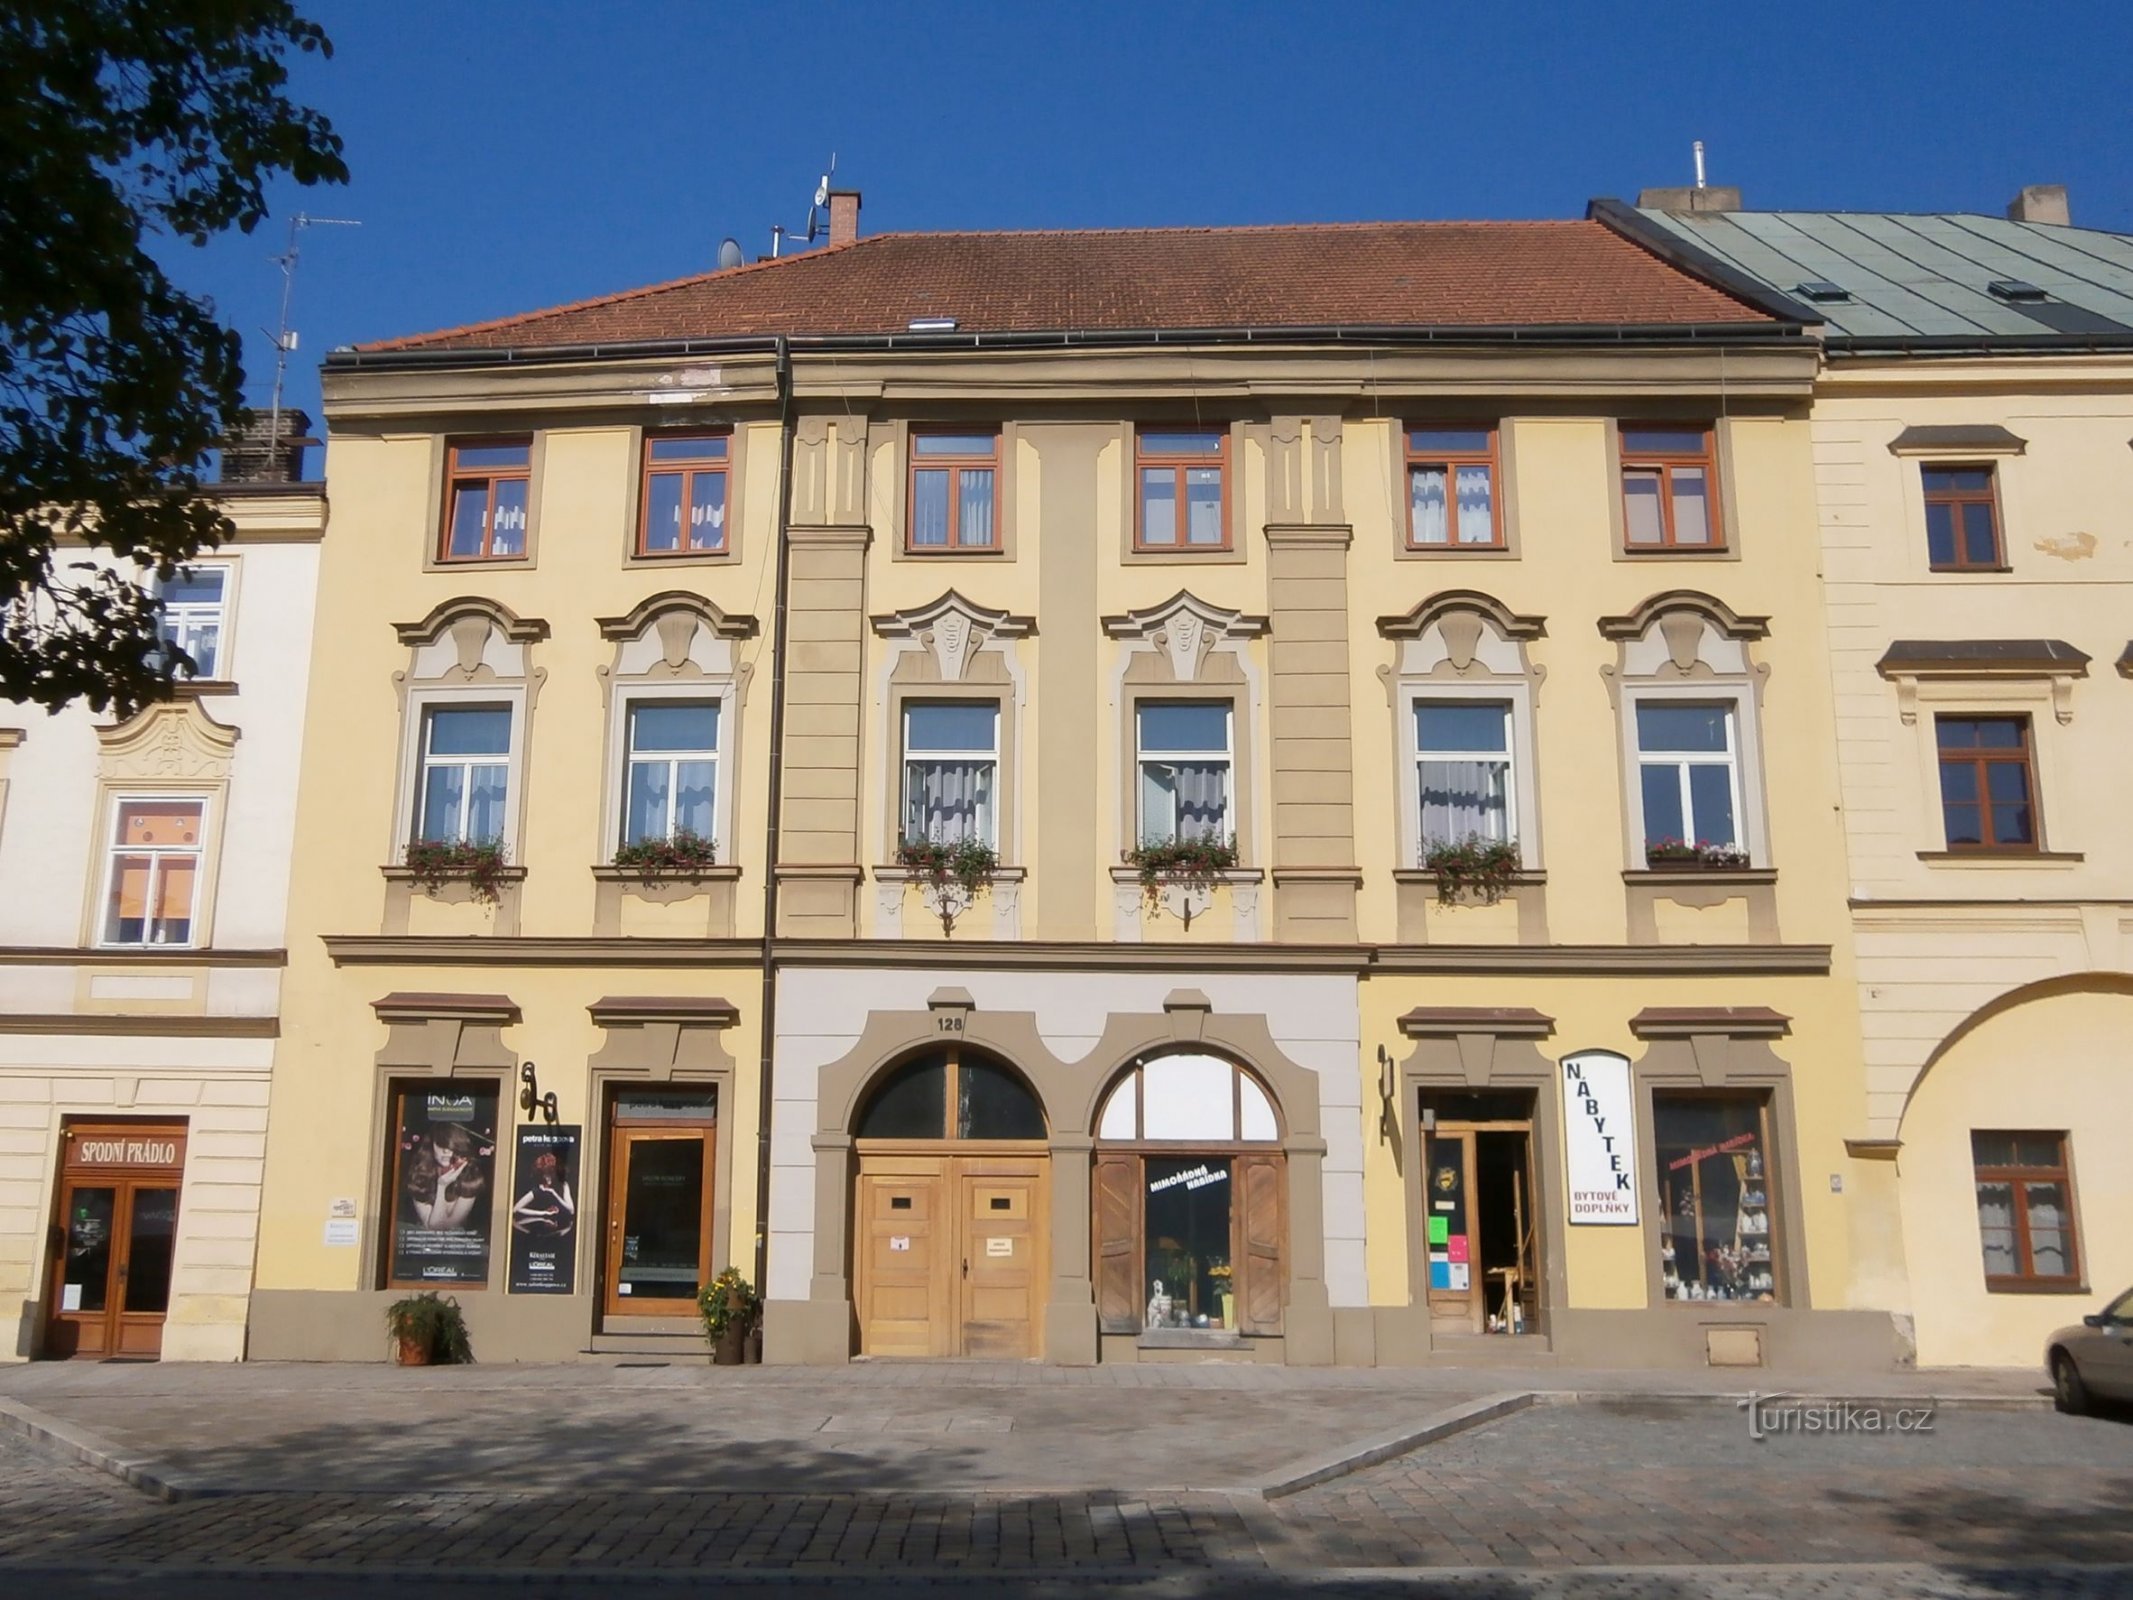 Malé náměstí no. 128 (Hradec Králové, April 9.7.2013, XNUMX)